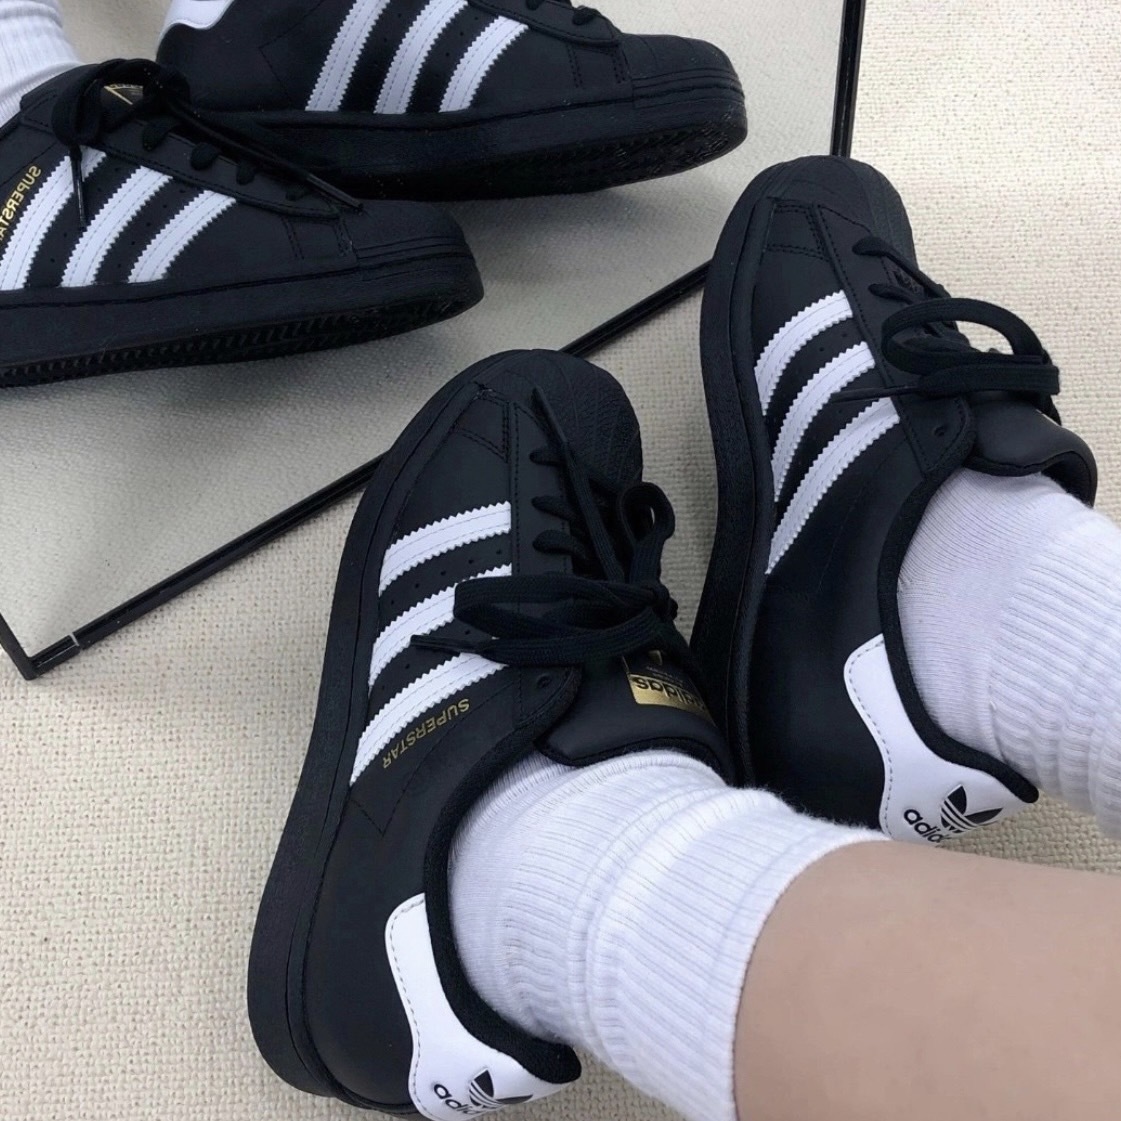 Adidas Superstar 復古貝殼鞋全黑金標EG4959